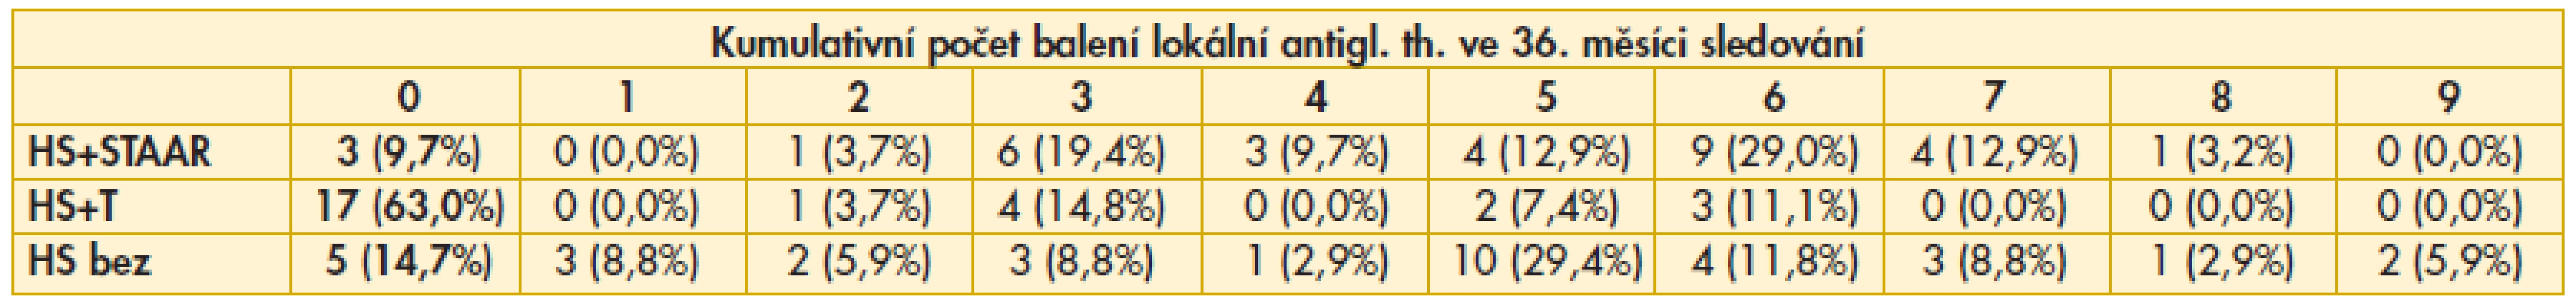 Výsledky srovnání kumulativního počtu balení lokální antiglaukomové th. ve 36. měsíci sledování